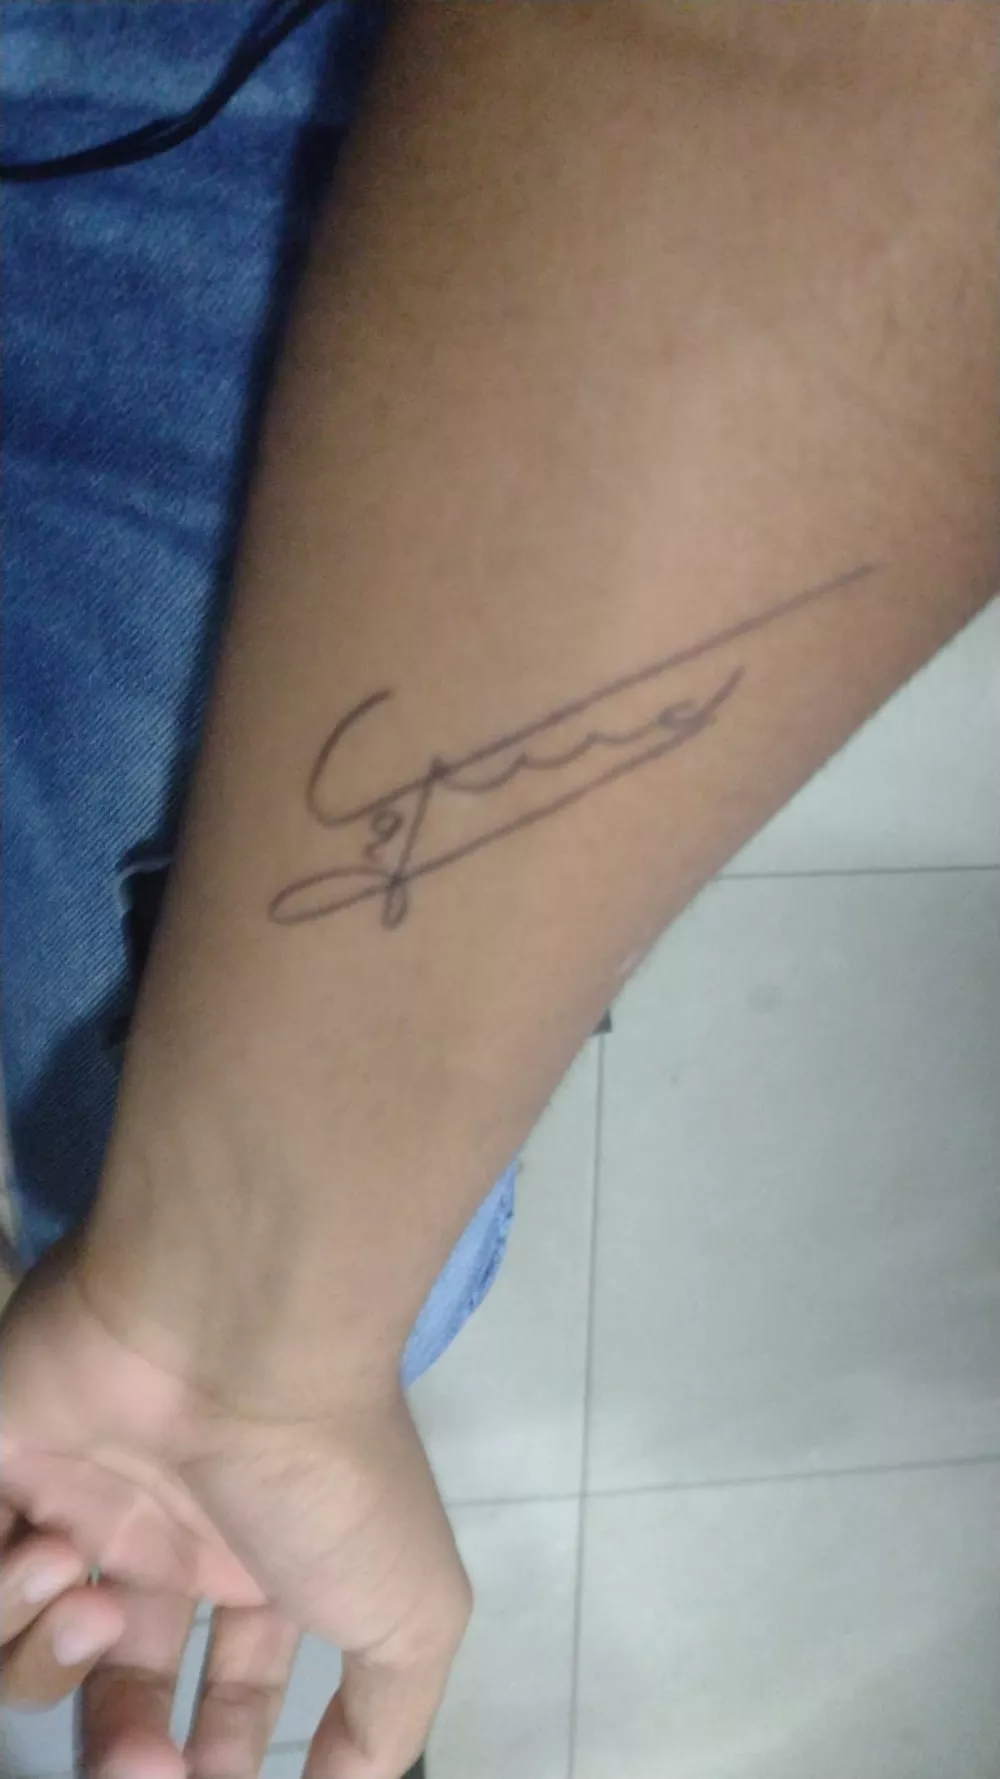 Gandula Jorge Bayer tatuou o autógrafo de Fred em seu braço - Arquivo pessoal